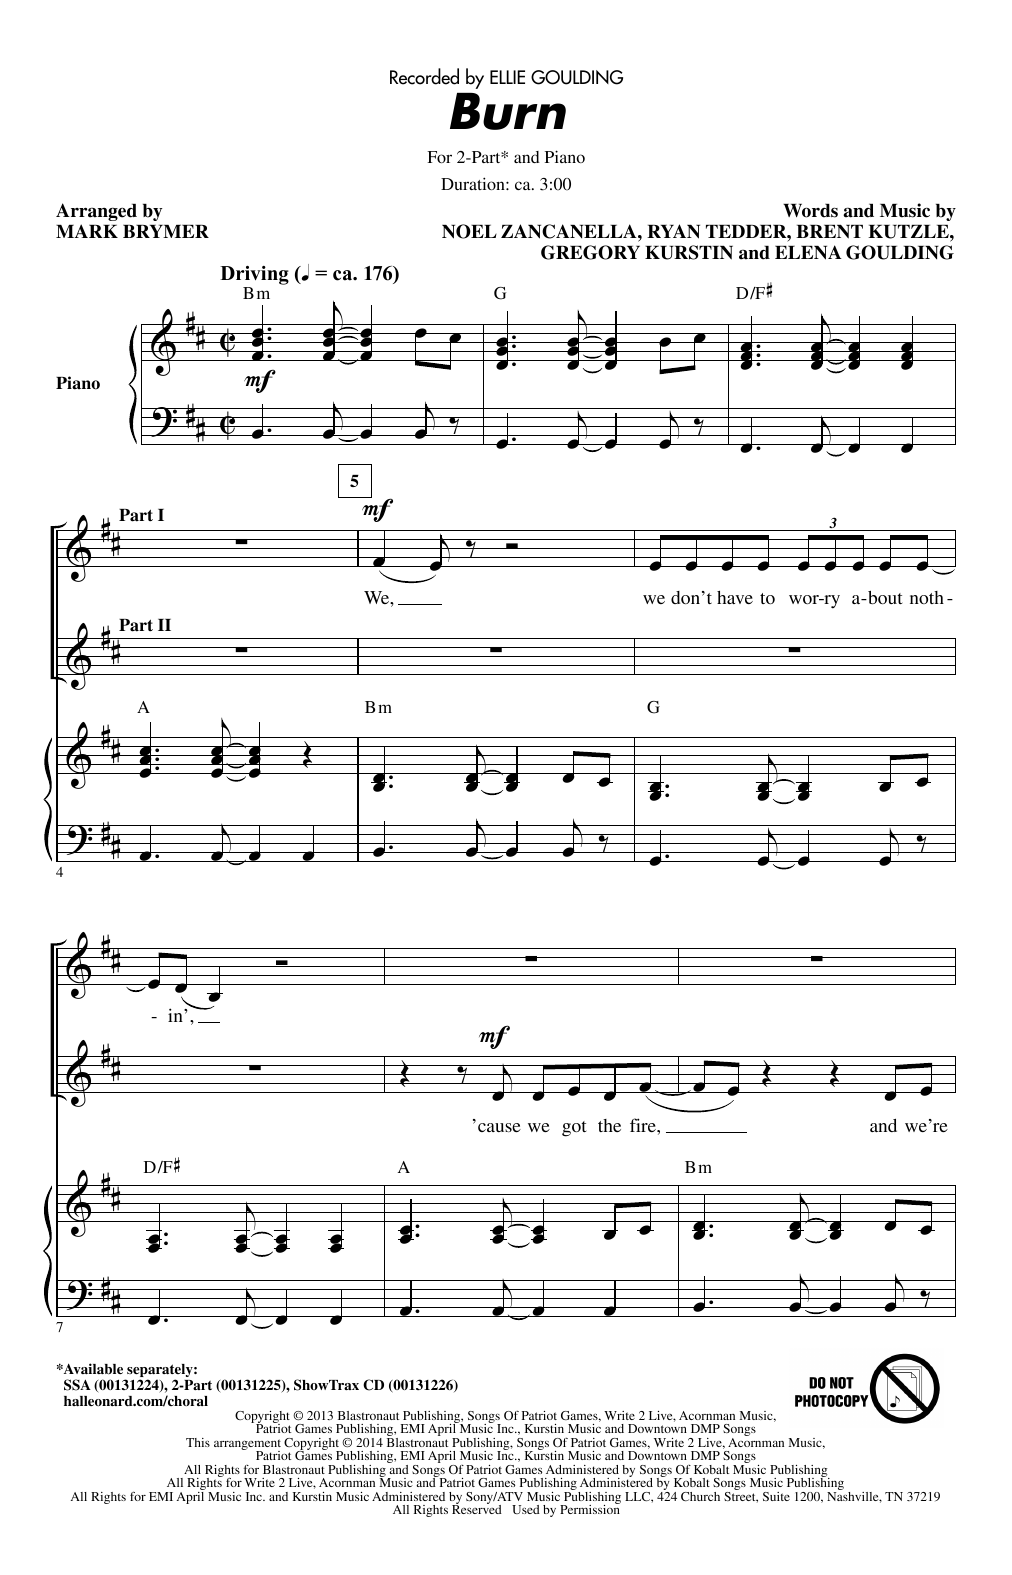 Ellie Goulding Burn (arr. Mark Brymer) Sheet Music Notes & Chords for 2-Part Choir - Download or Print PDF